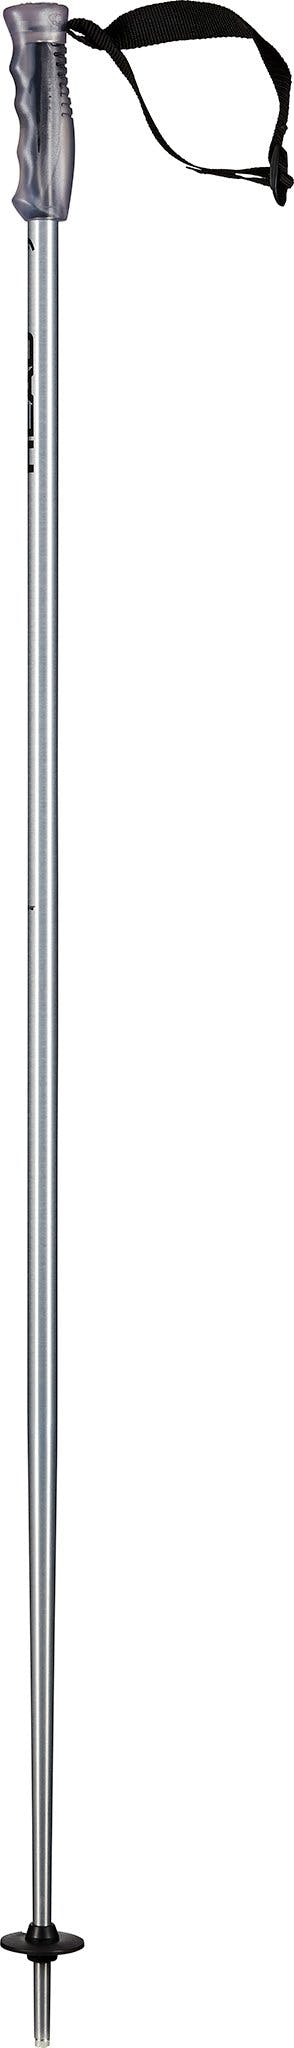 Product image for Multi Ski Pole